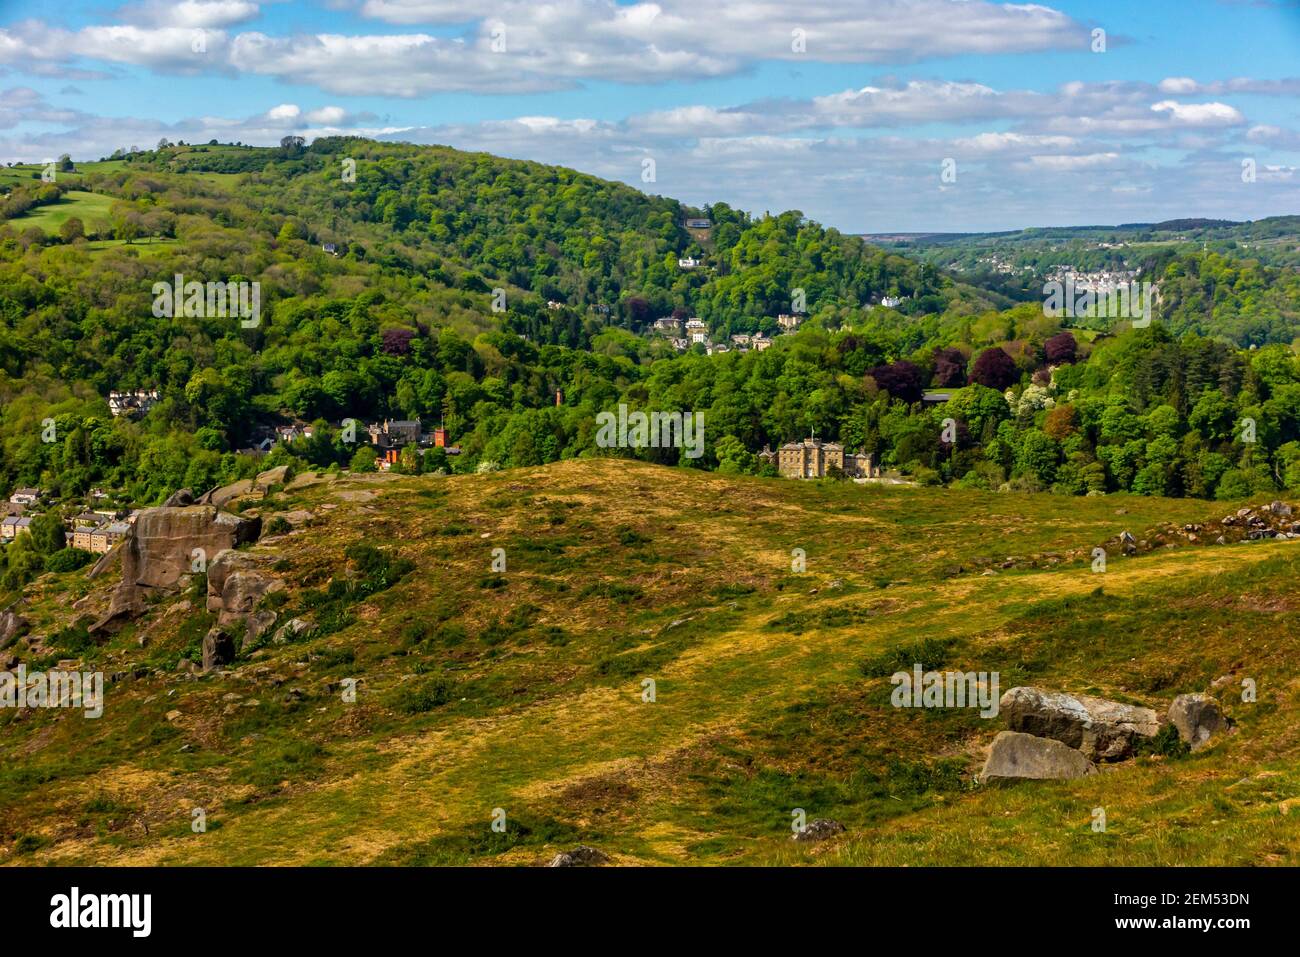 Paysage avec arbres et collines au début de l'été à Cromford Dans le Peak District Derbyshire Dales Angleterre Royaume-Uni Banque D'Images